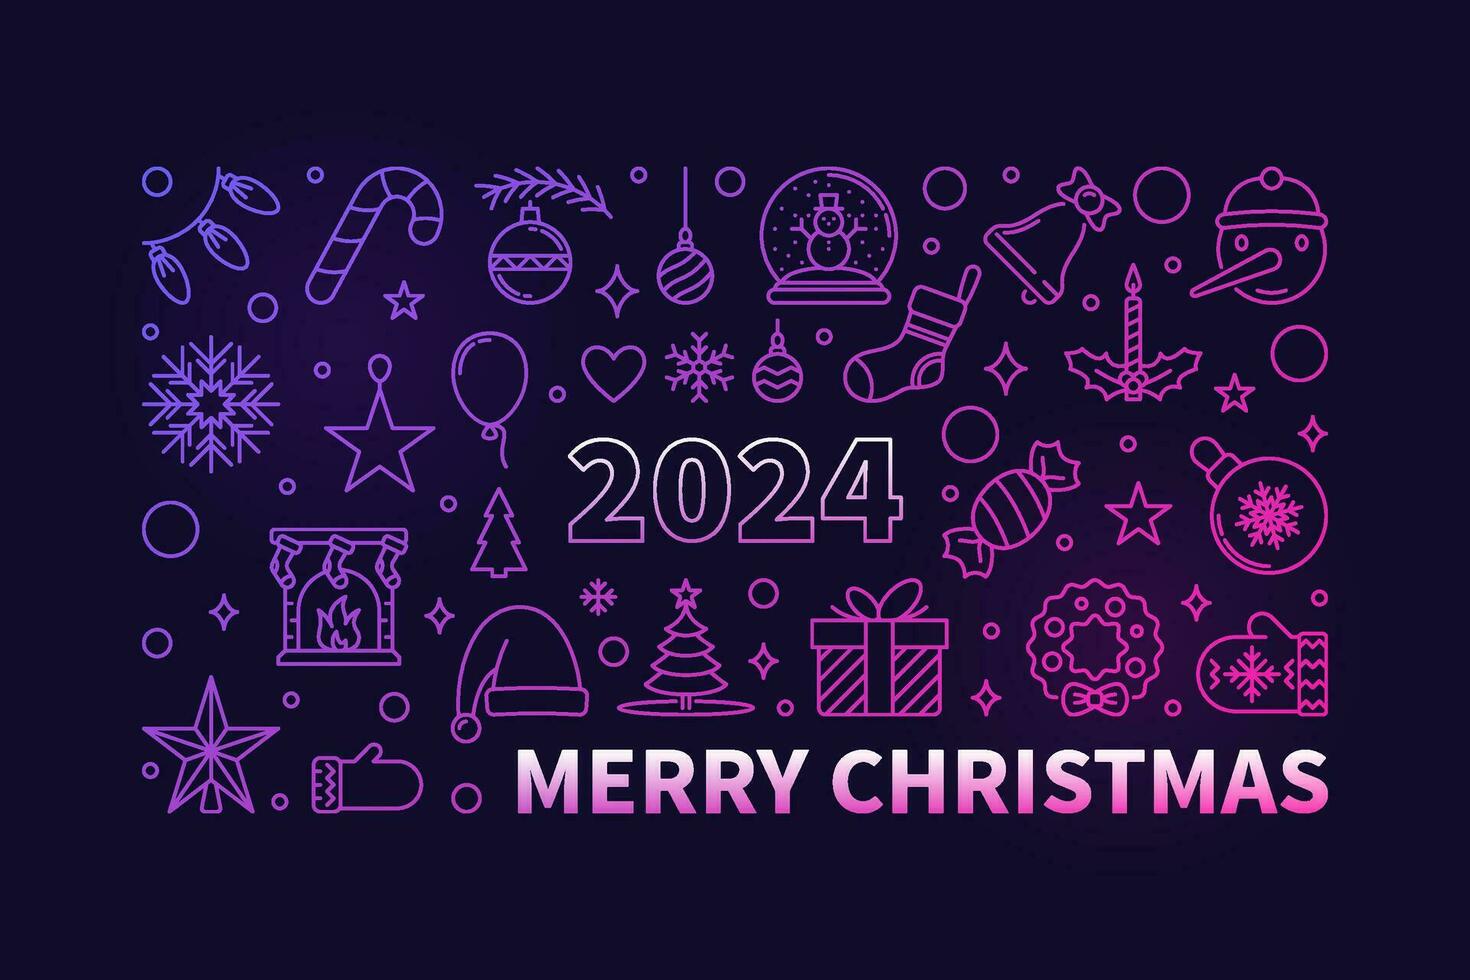 alegre natal colori esboço bandeira - vetor 2024 Natal horizontal ilustração